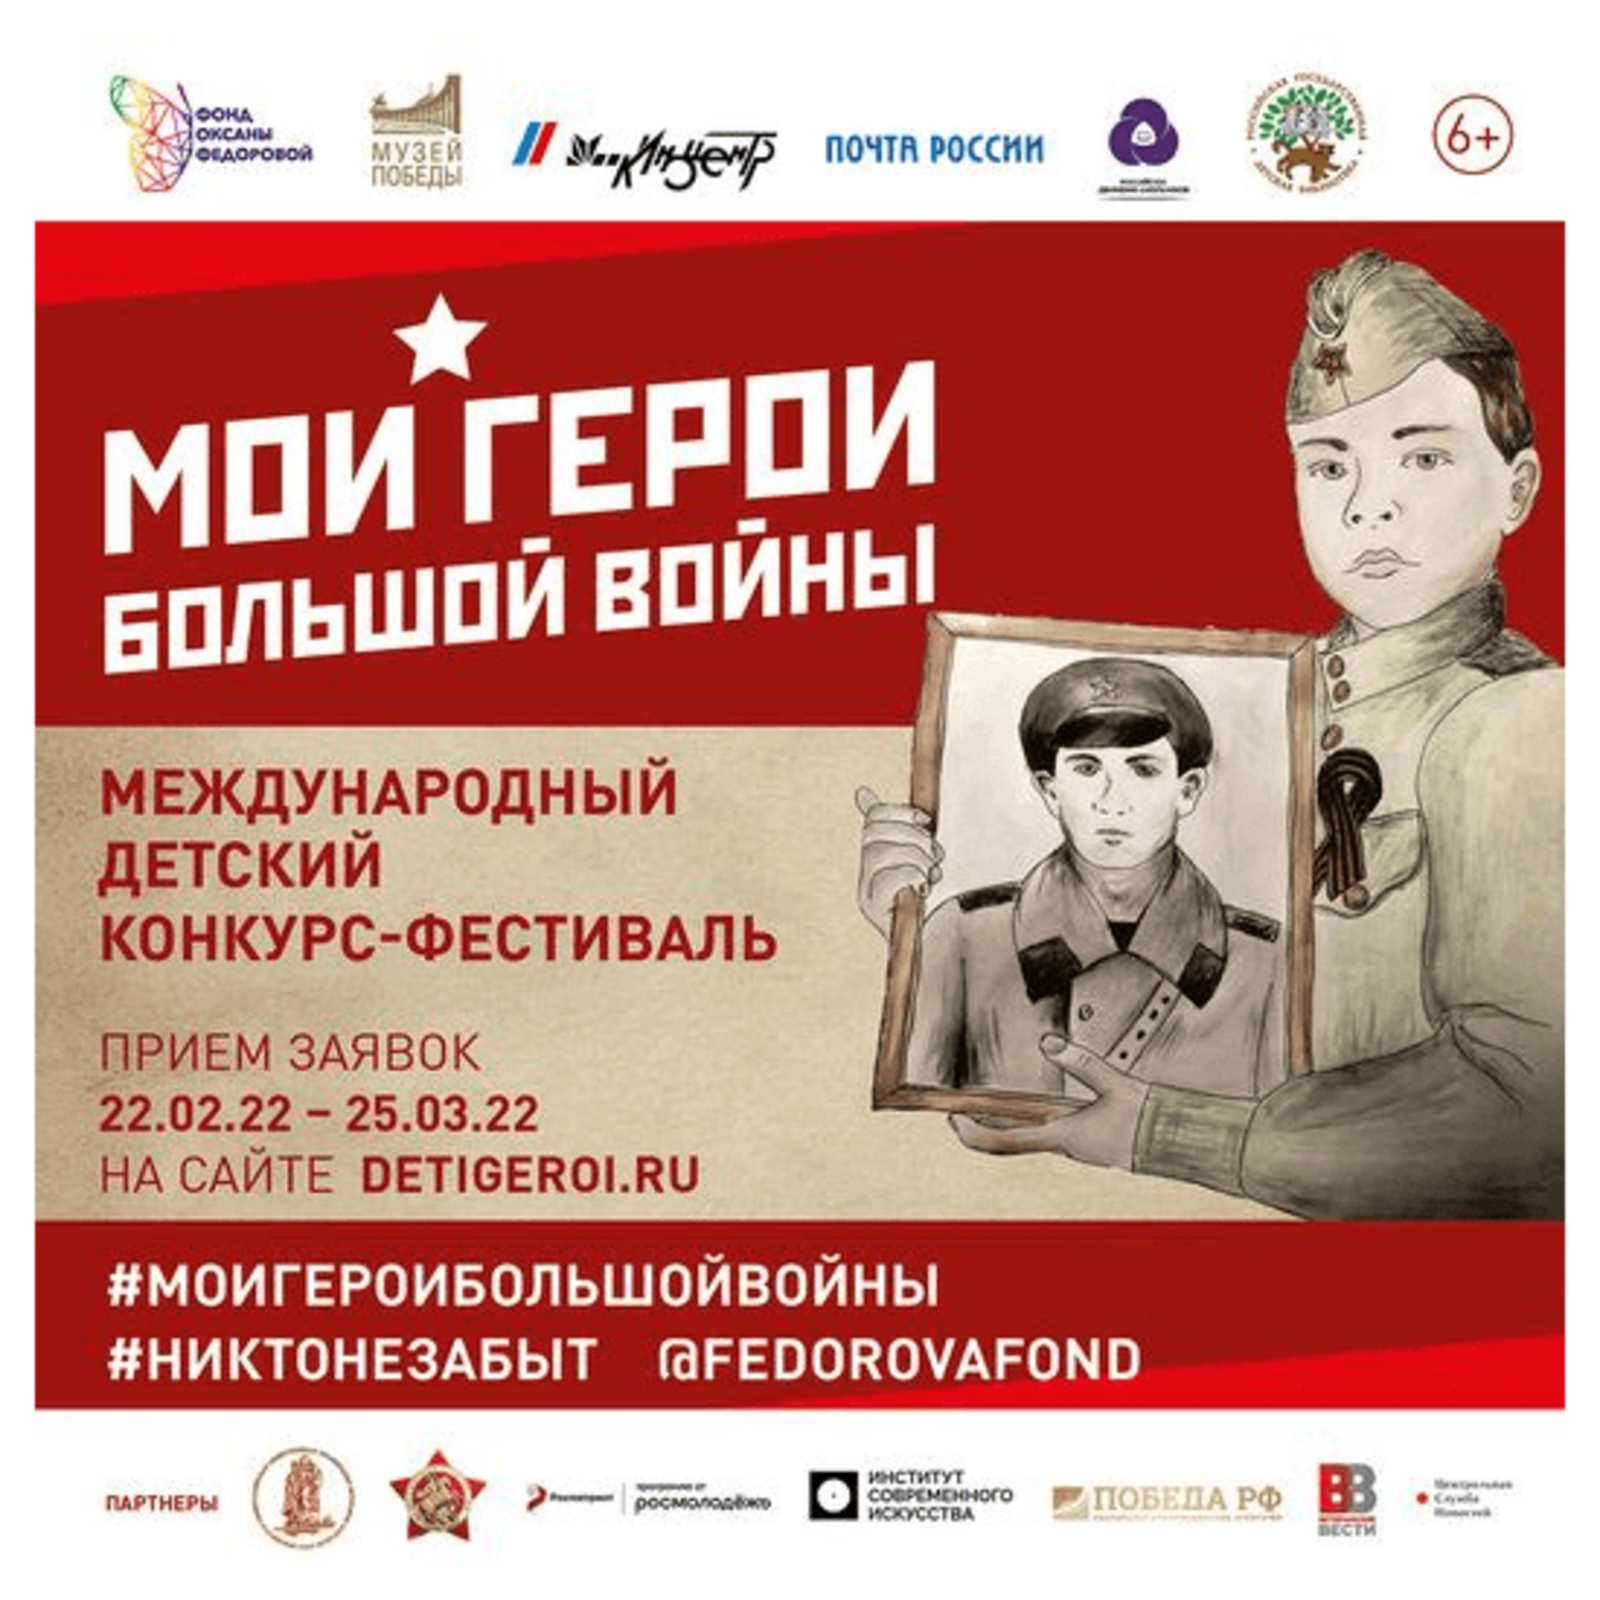 Открылся прием заявок на Международный конкурс-фестиваль «Мои герои большой войны»